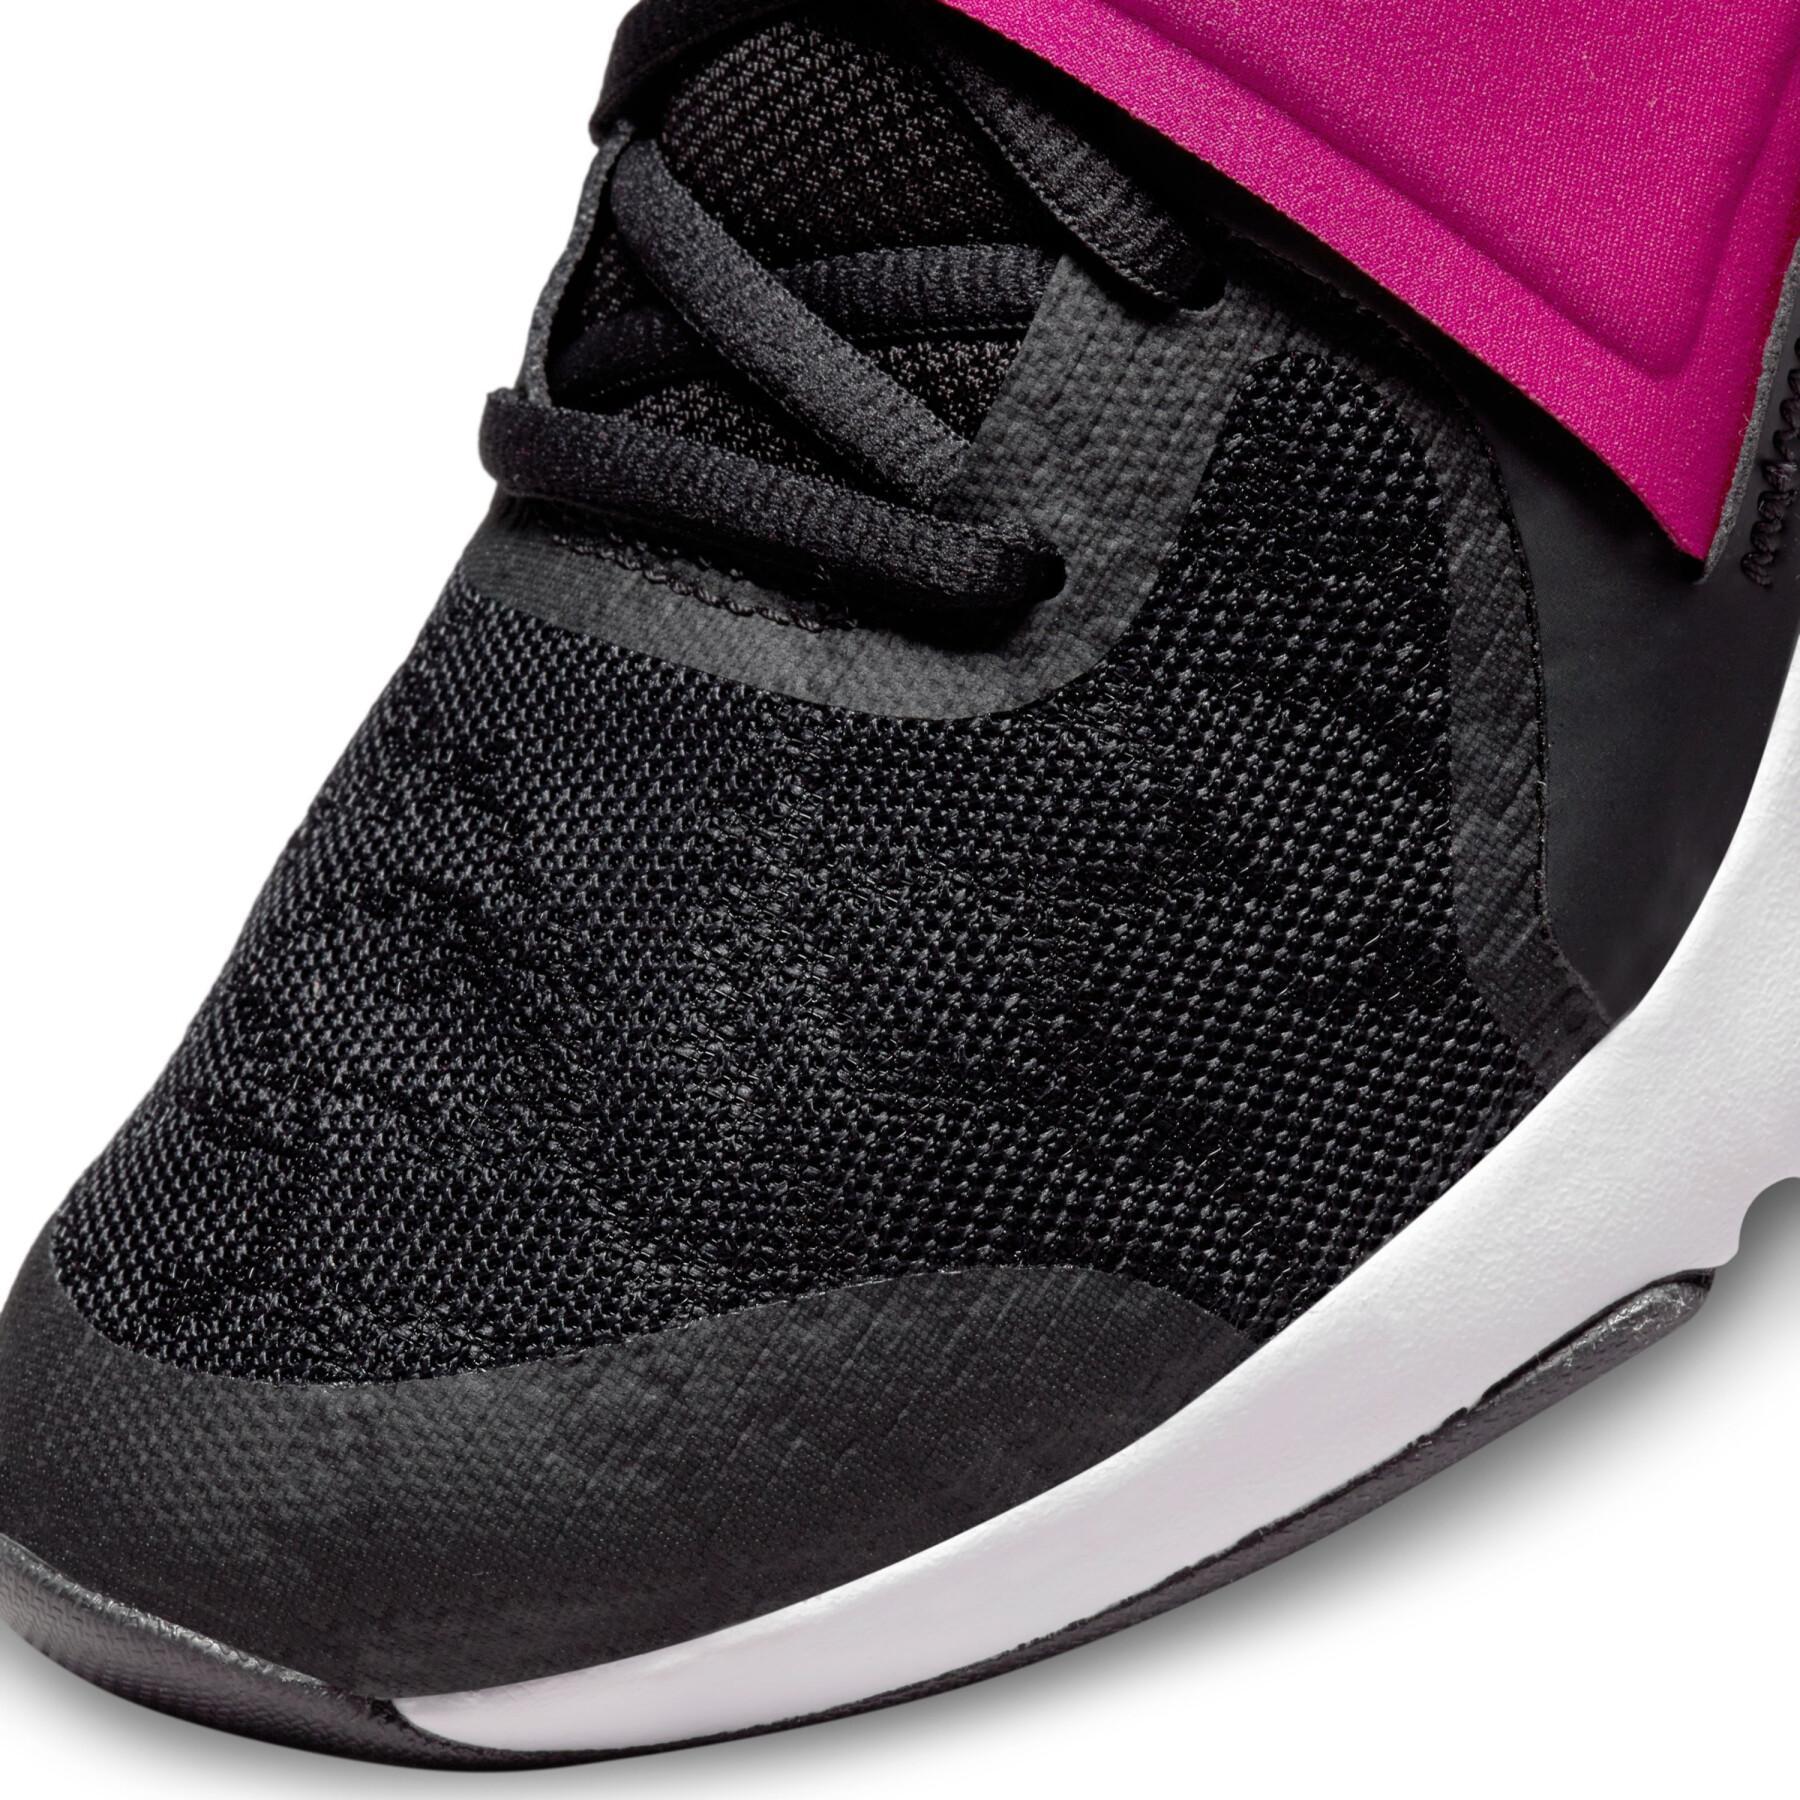 Chaussures de cross training femme Nike Renew In-season TR 12